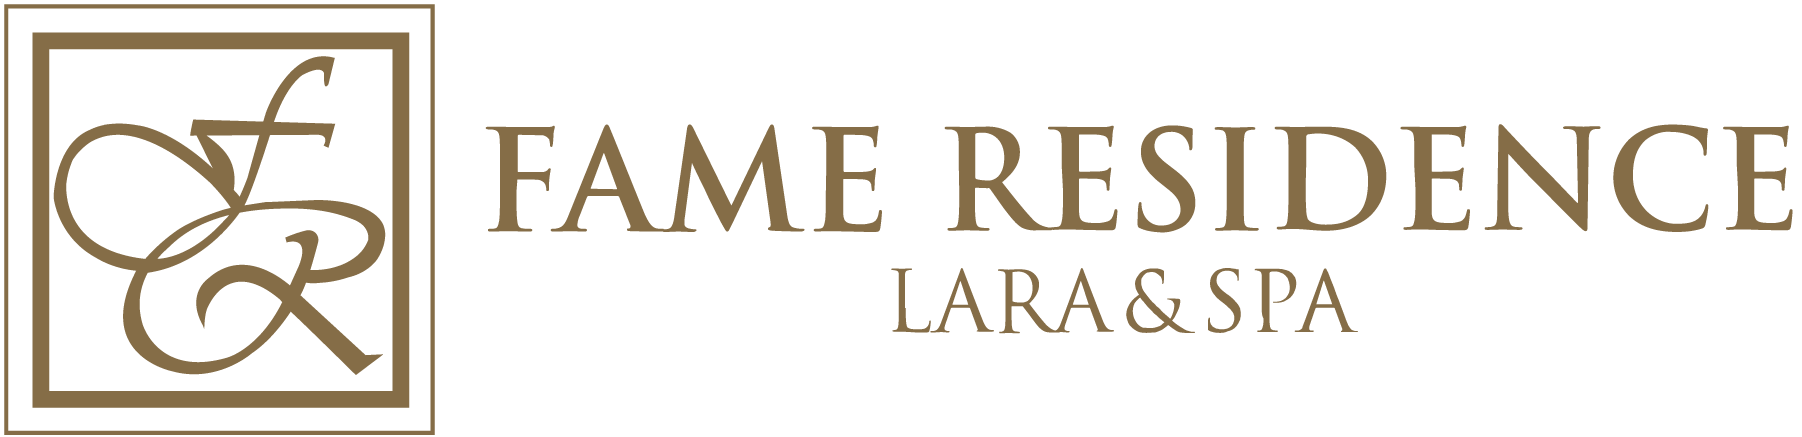 193 - Fame Residence Lara